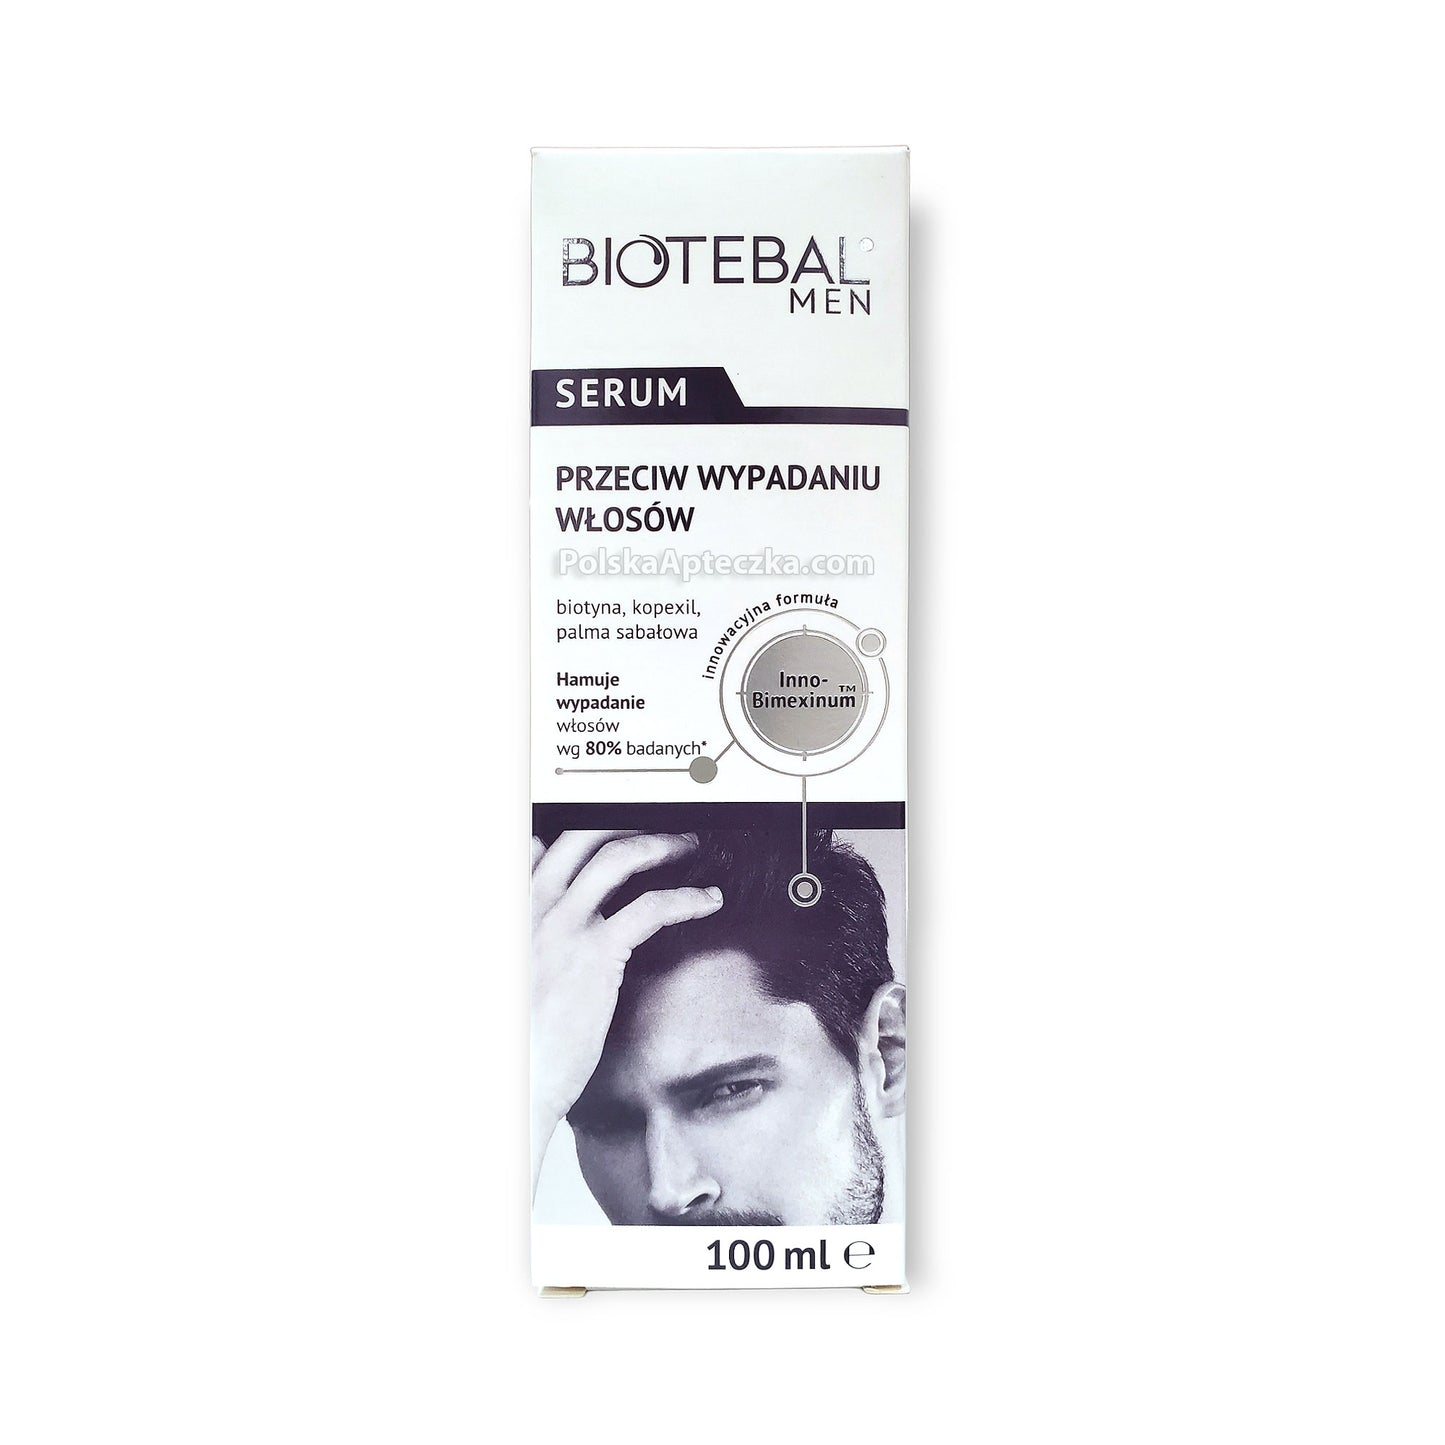 Biotebal Men, SERUM przeciw wypadaniu włosów, 100 ml